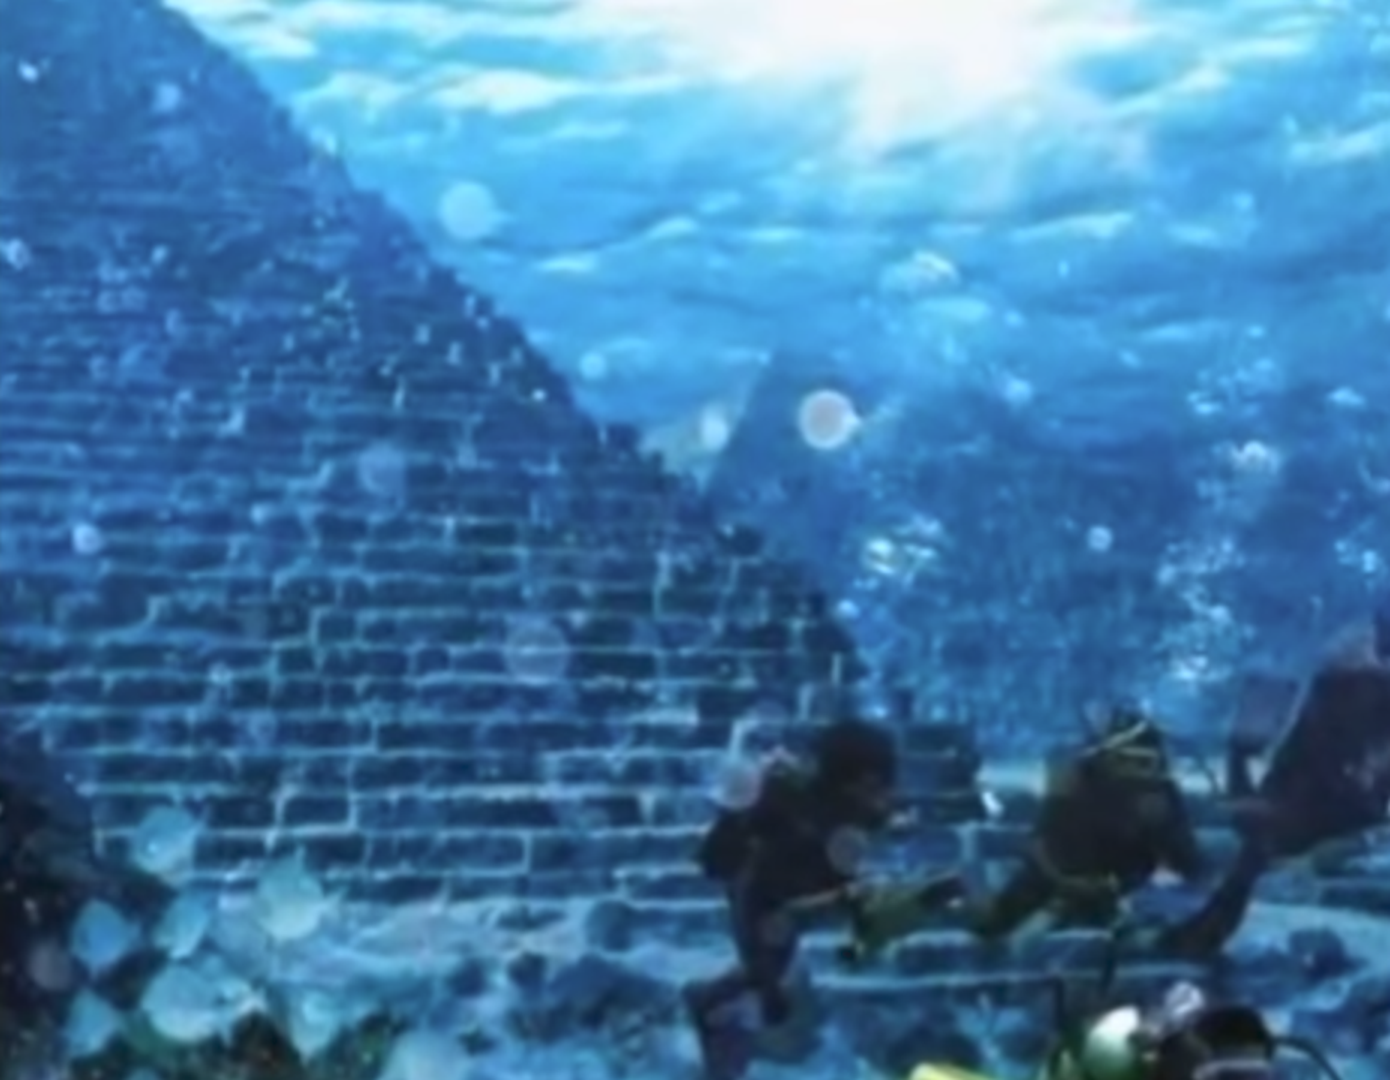 Blizu otoka Yonaguni kod Japana, ronioci su 1986. otkrili fascinantne ruševine na dnu mora. Podvodne piramide još su uvijek predmet rasprava svjetskih znanstvenika jer ne mogu utvrditi jesu li nastale ljudskom rukom. Ako jesu, dokaz su postojanja civilizacije prije poznatog vremena.